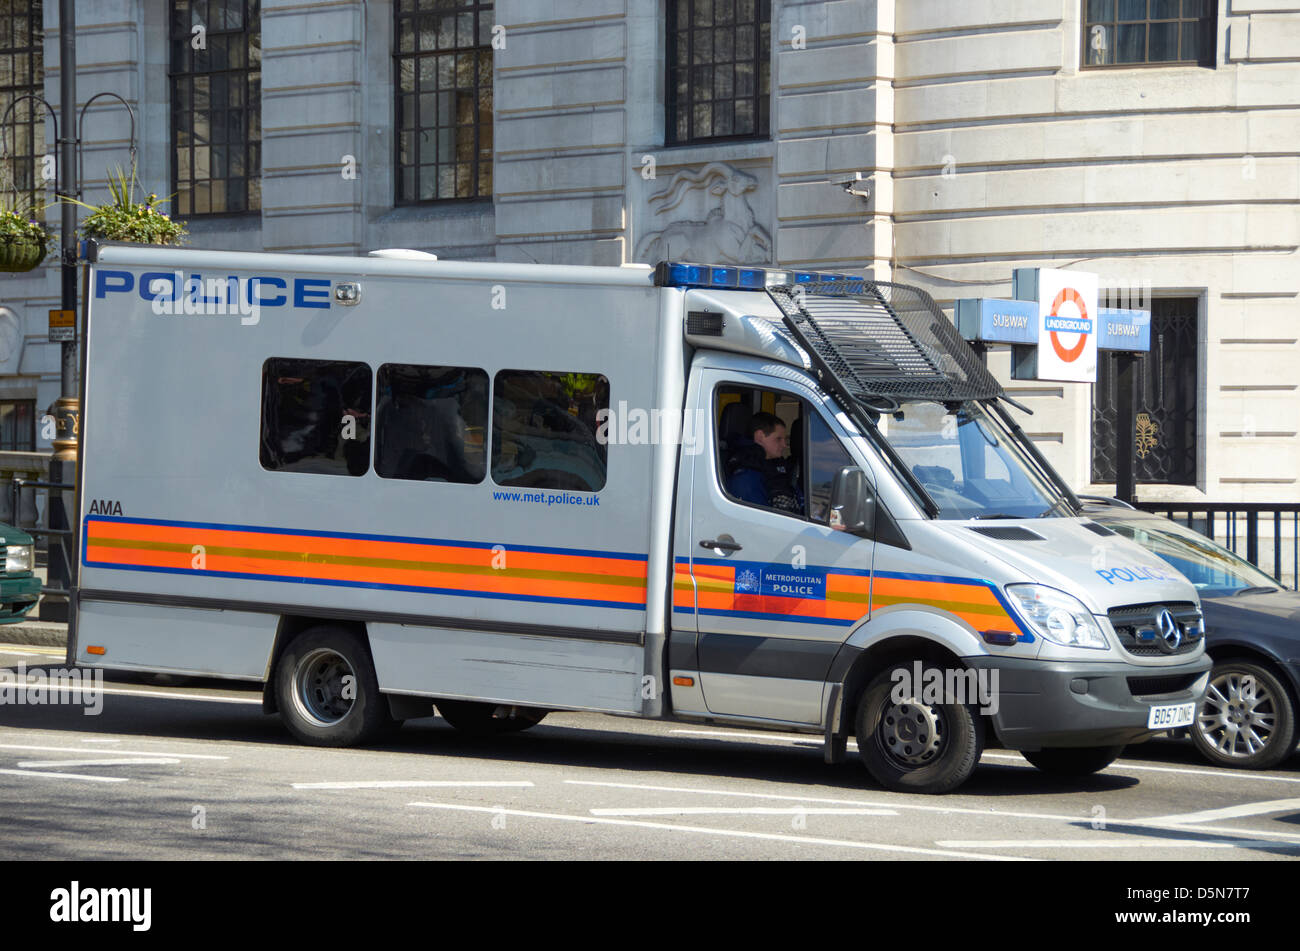 Silver Police van in London (Trafalgar Square). Stock Photo